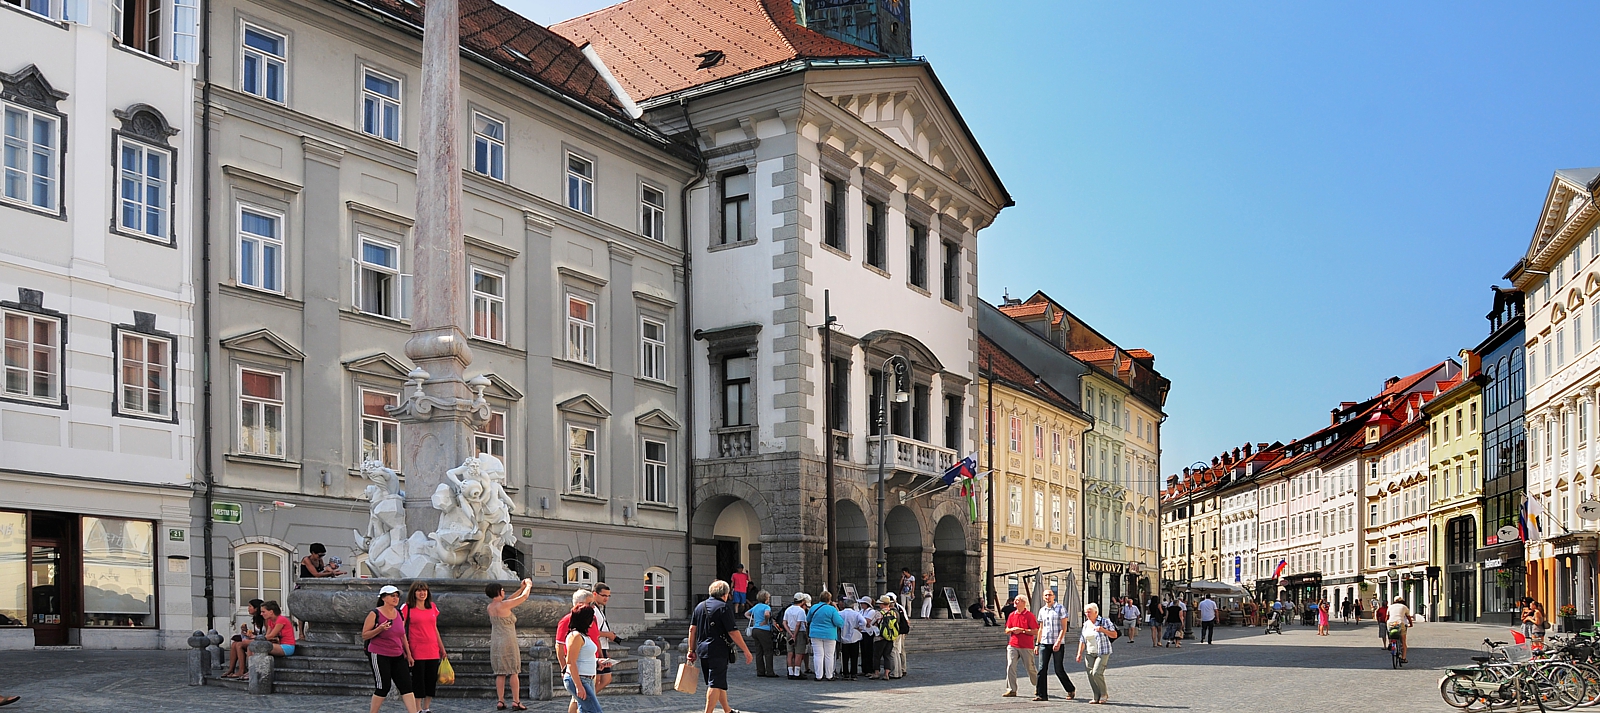 Ljubljana: Town hall